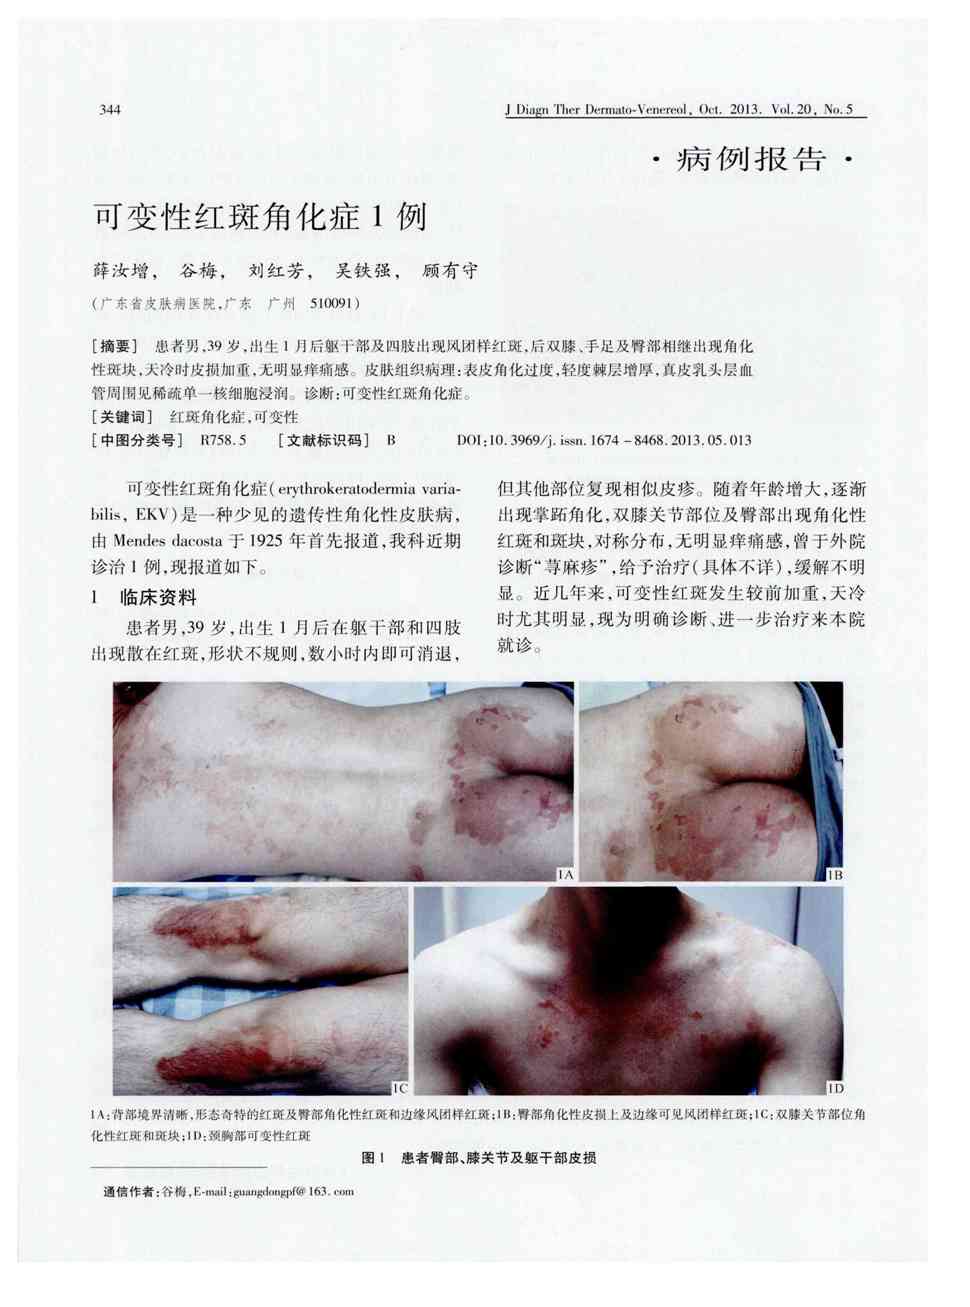 期刊可变性红斑角化症1例       患者男,39岁,出生1月后躯下部及四肢